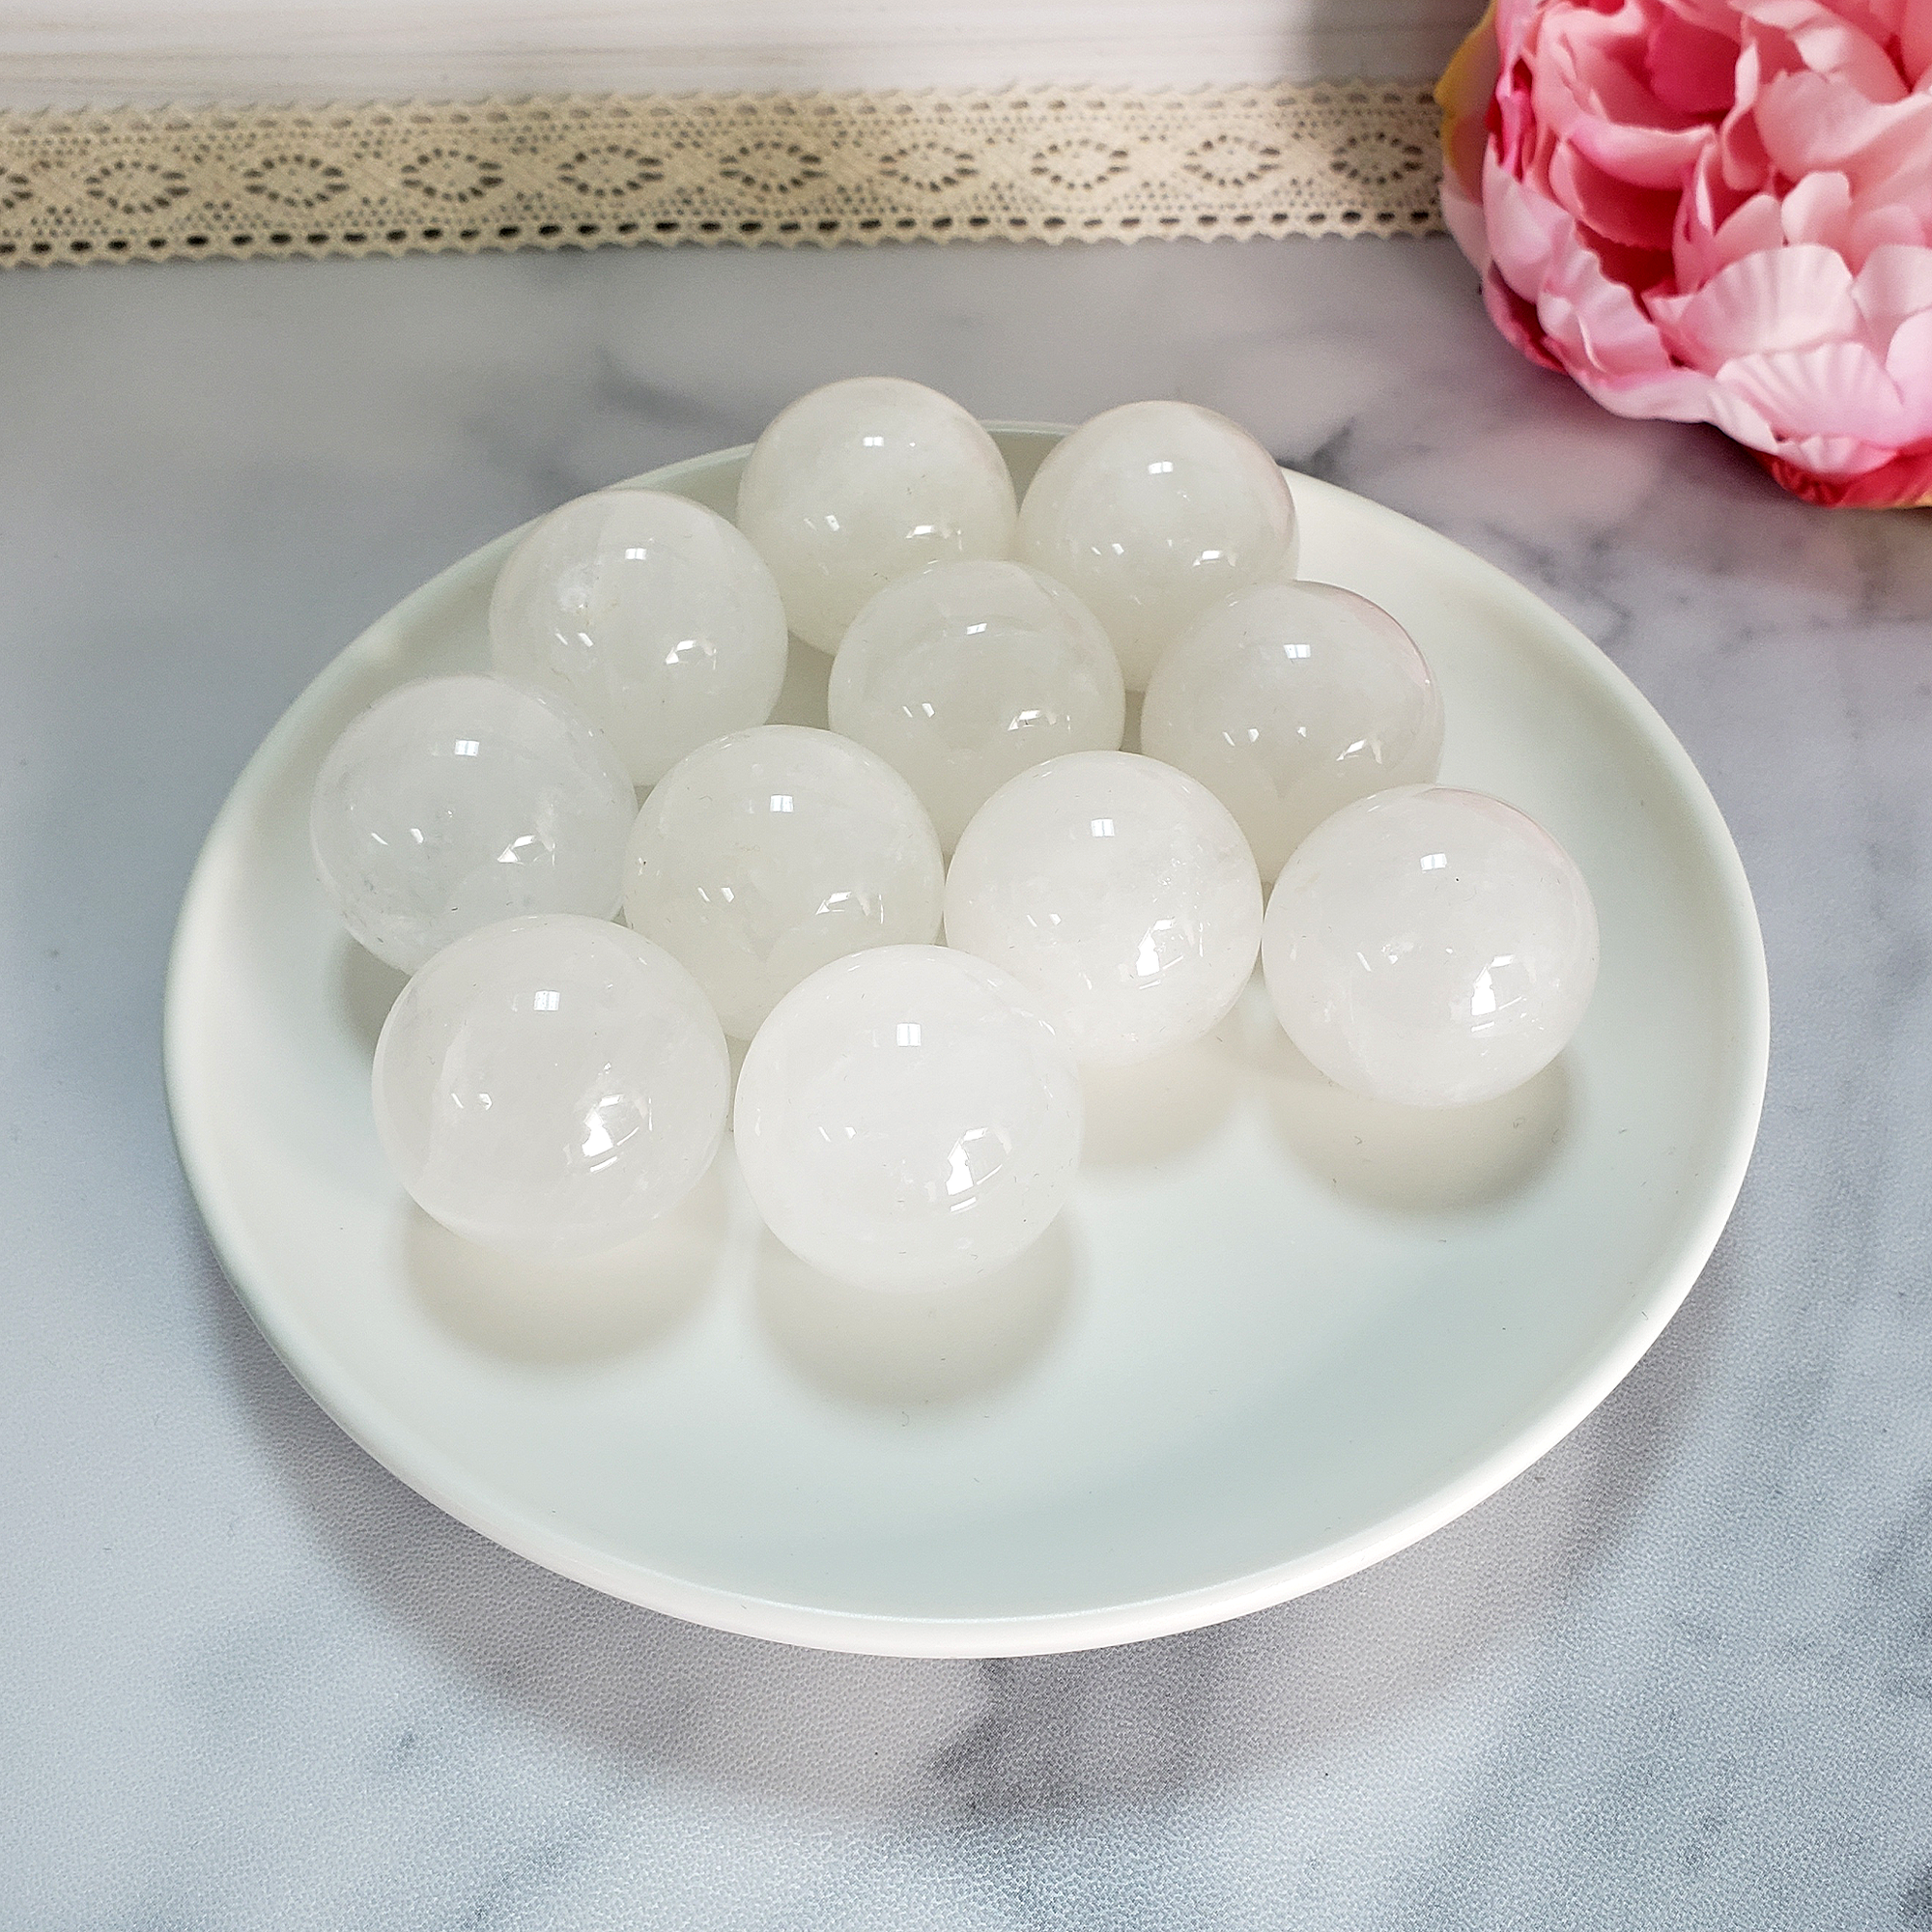 Milky Quartz Natural Gemstone Sphere Crystal Orb Marble - One 30mm Sphere - Milky Quartz Crystal Balls in White Ceramic Dish